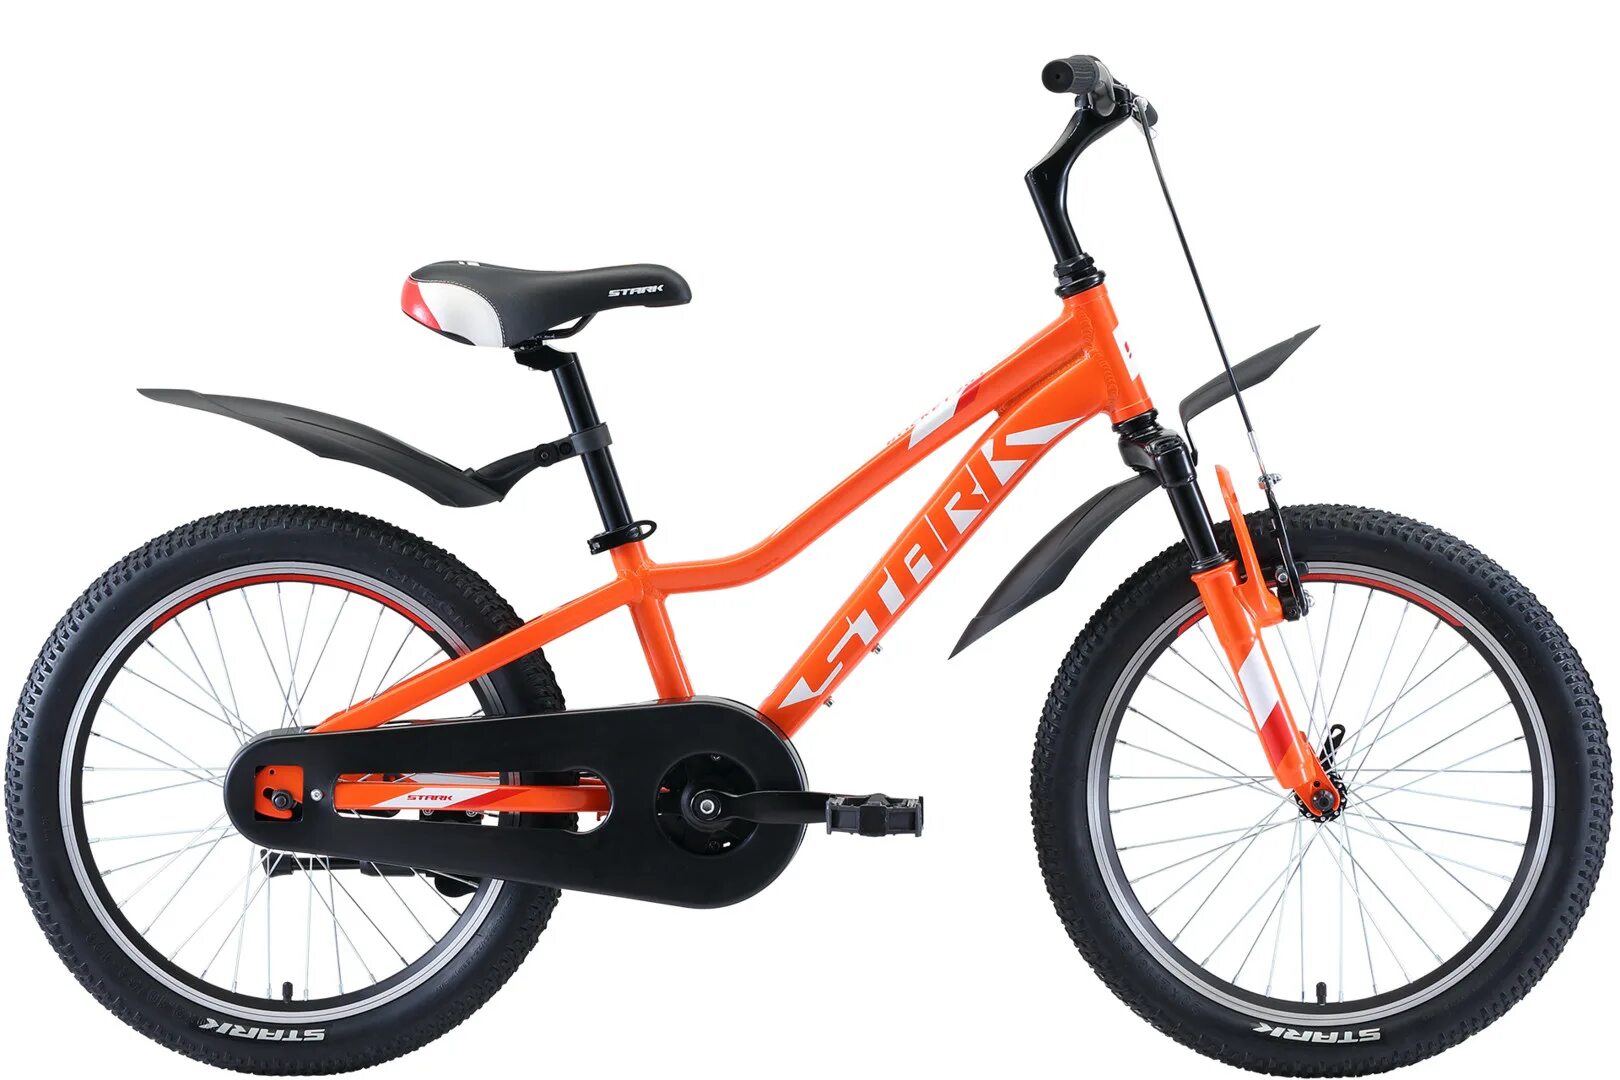 Купить подростковый велосипед для мальчика 10 лет. Велосипед Stark Rocket 20. Велосипед Старк рокет 20.1. Велосипед подростковый 20 Stark. Велосипед Старк 20 Orange.